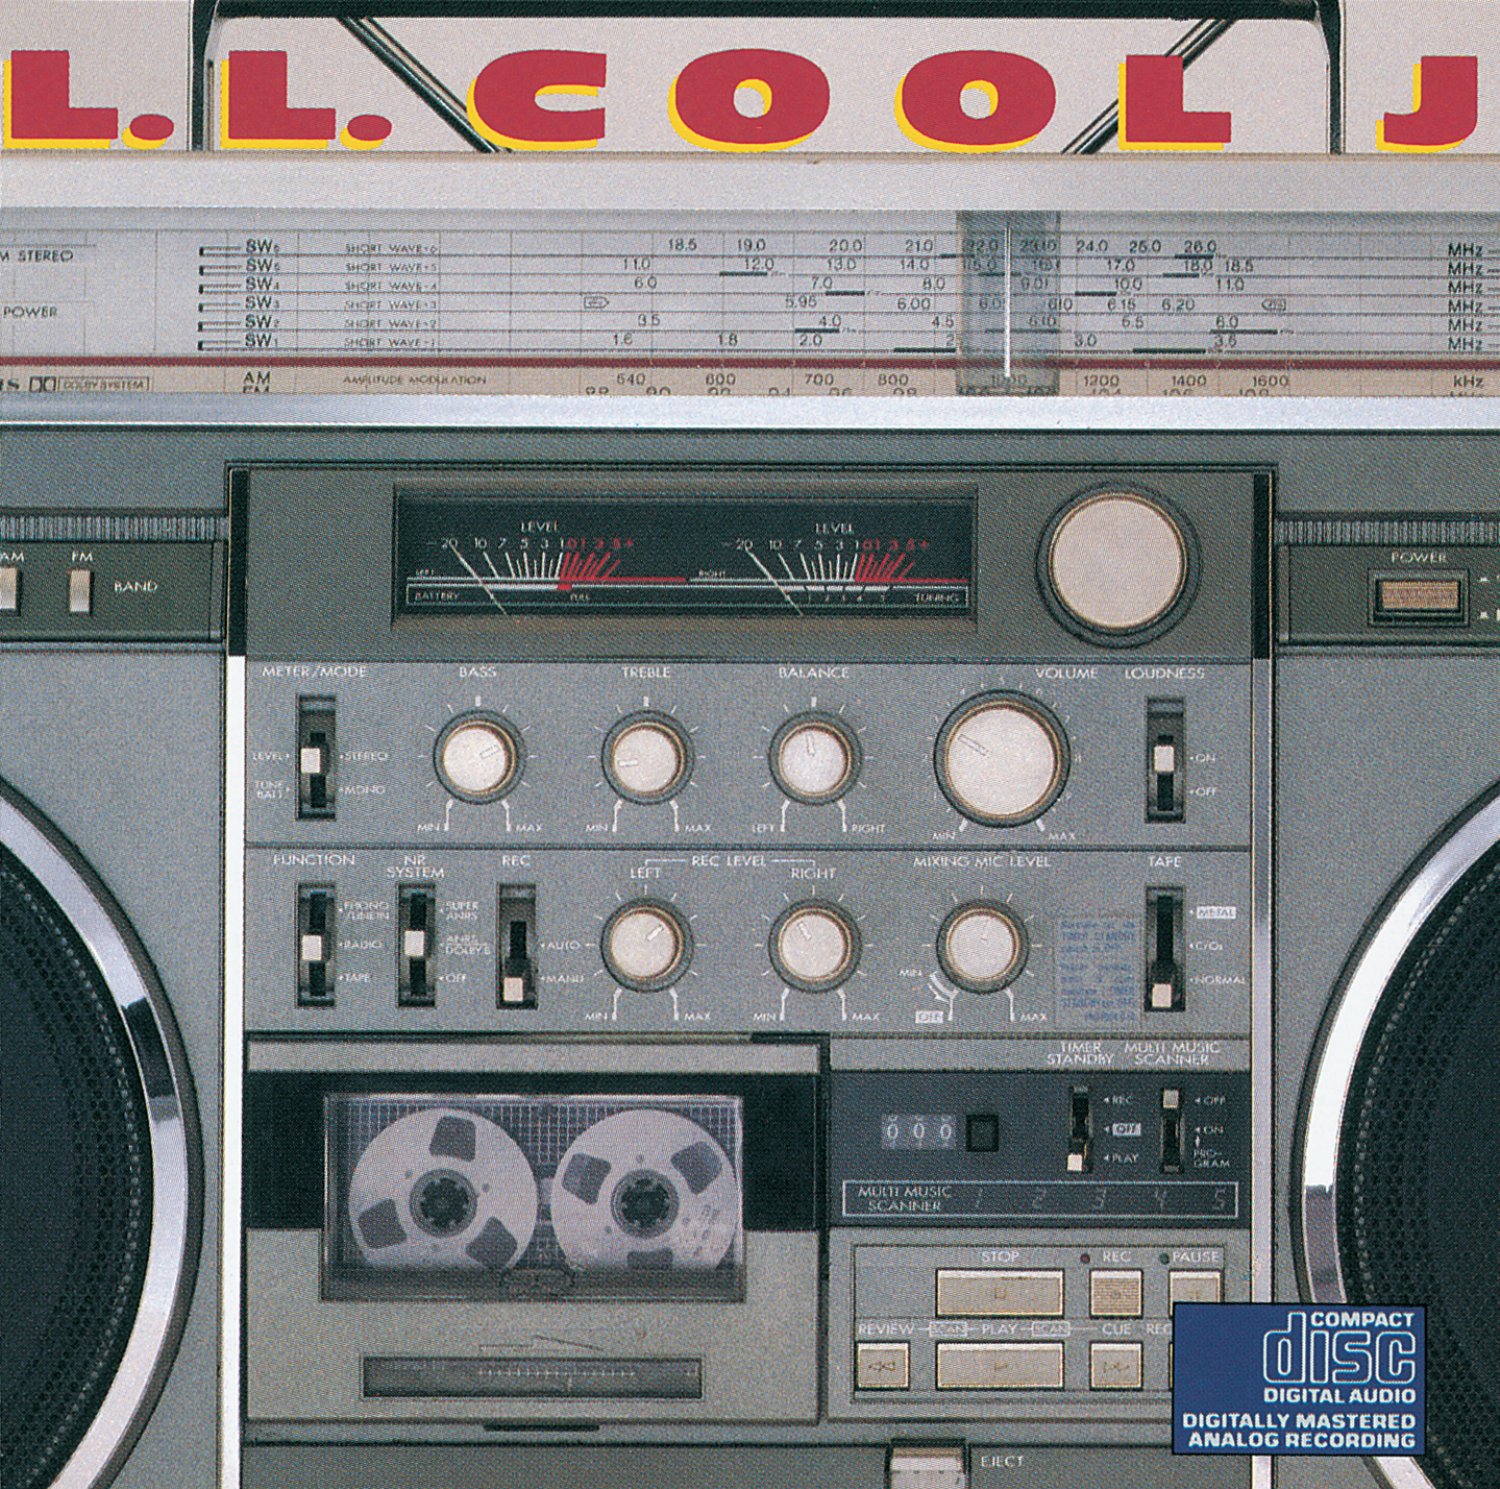 L.l._cool_j_-_radio